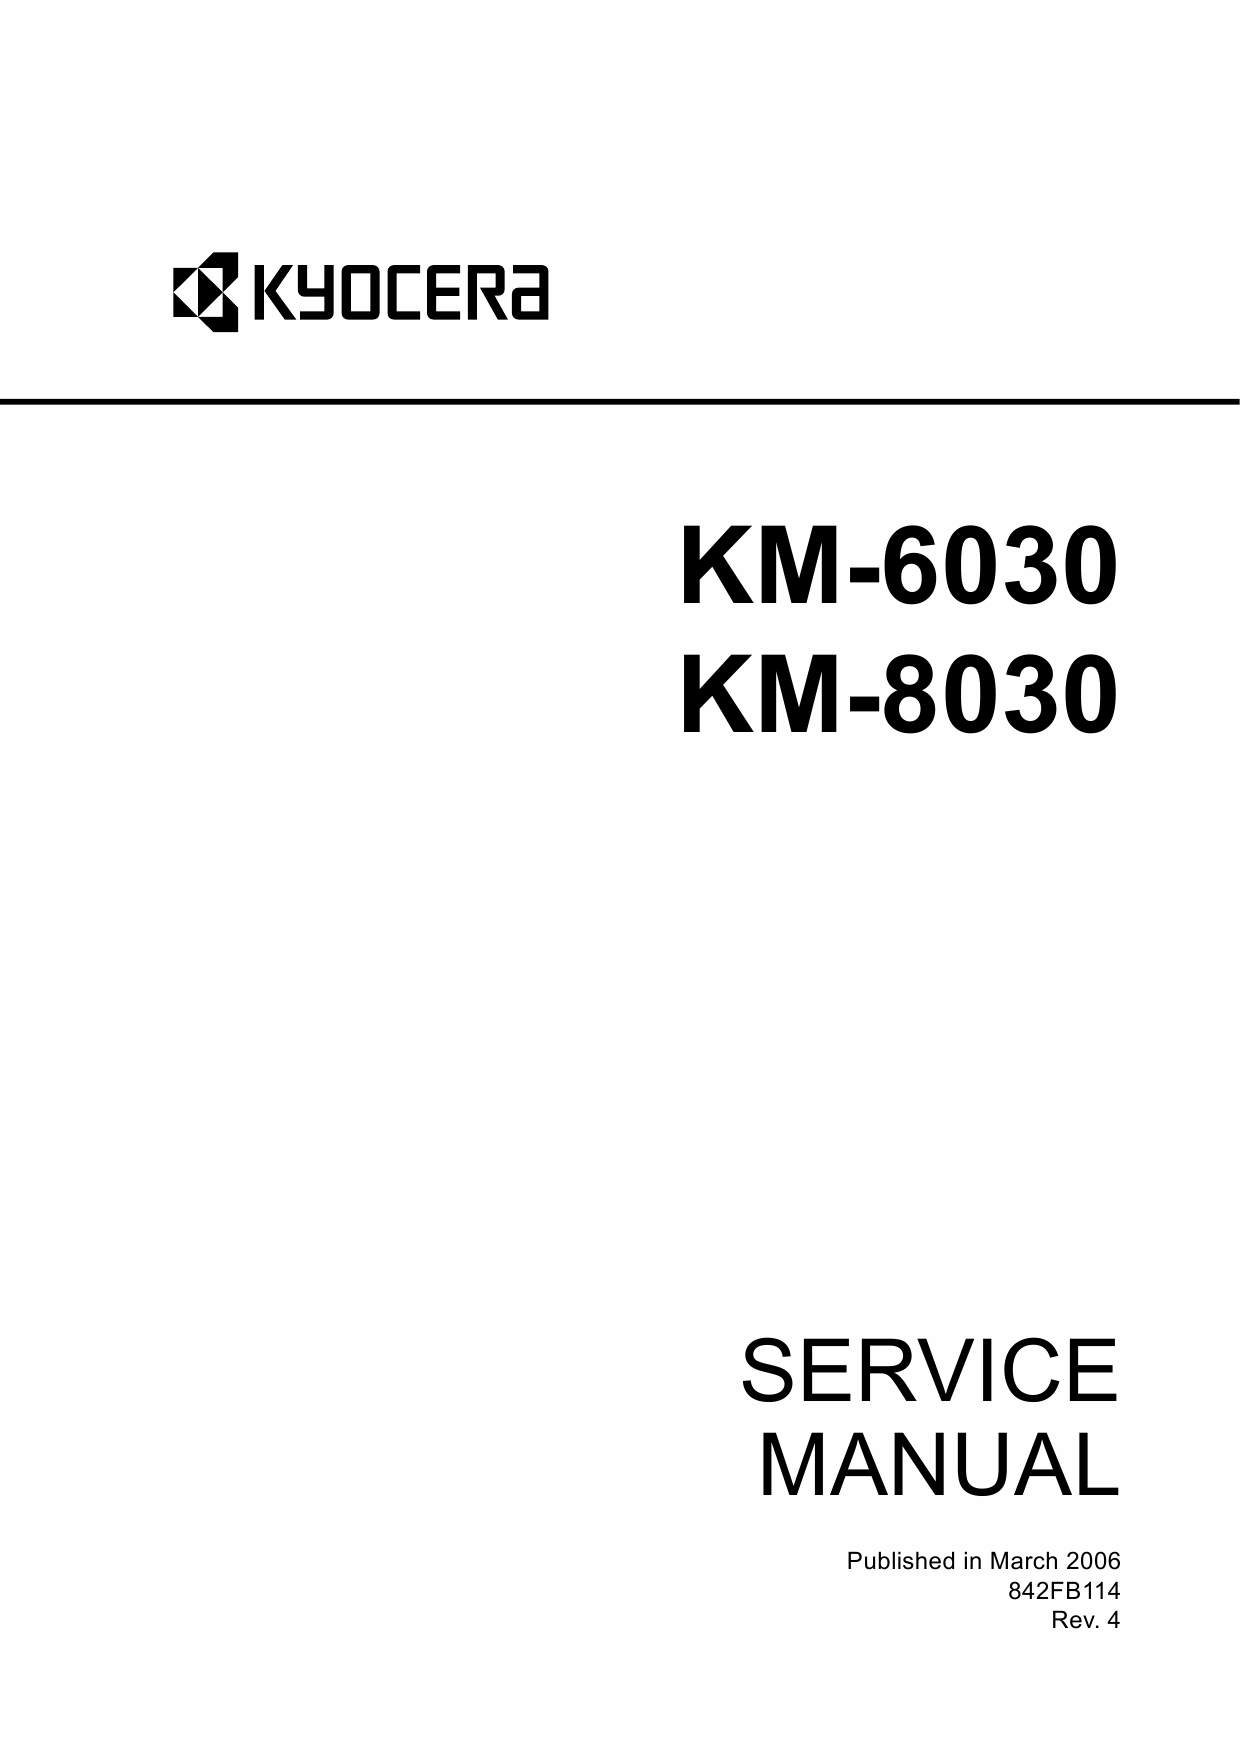 KYOCERA Copier KM-6030 8030 Service Manual-1